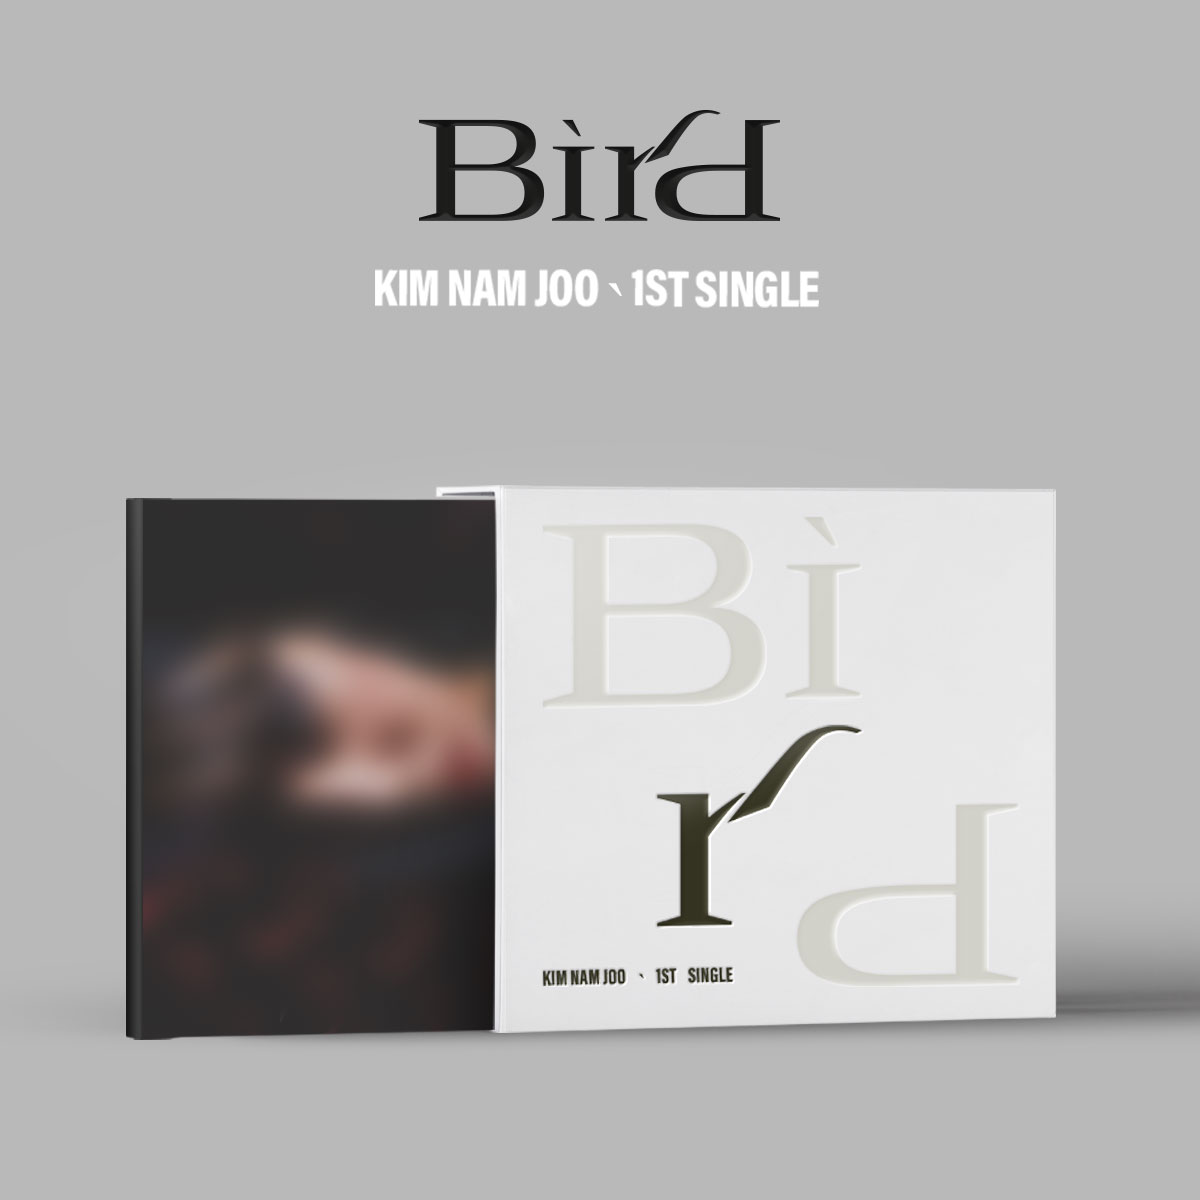 김남주(Kim Nam Joo) - 싱글앨범 1집 [Bird]